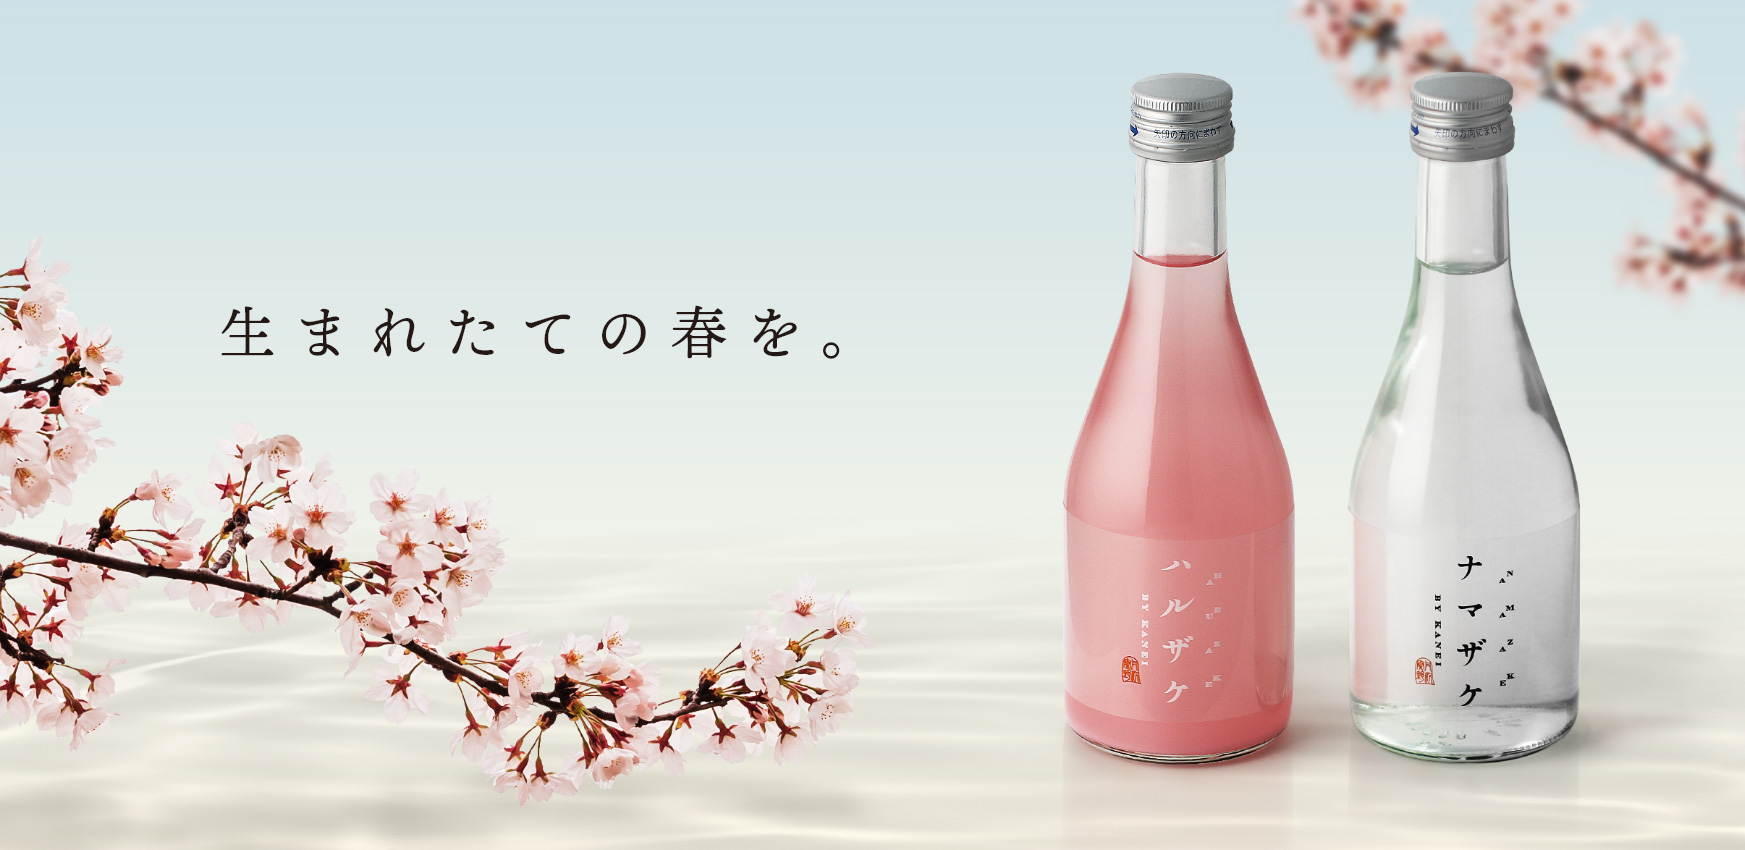 金井酒造店、春の新酒「ハルザケ・ナマザケ」予約販売開始